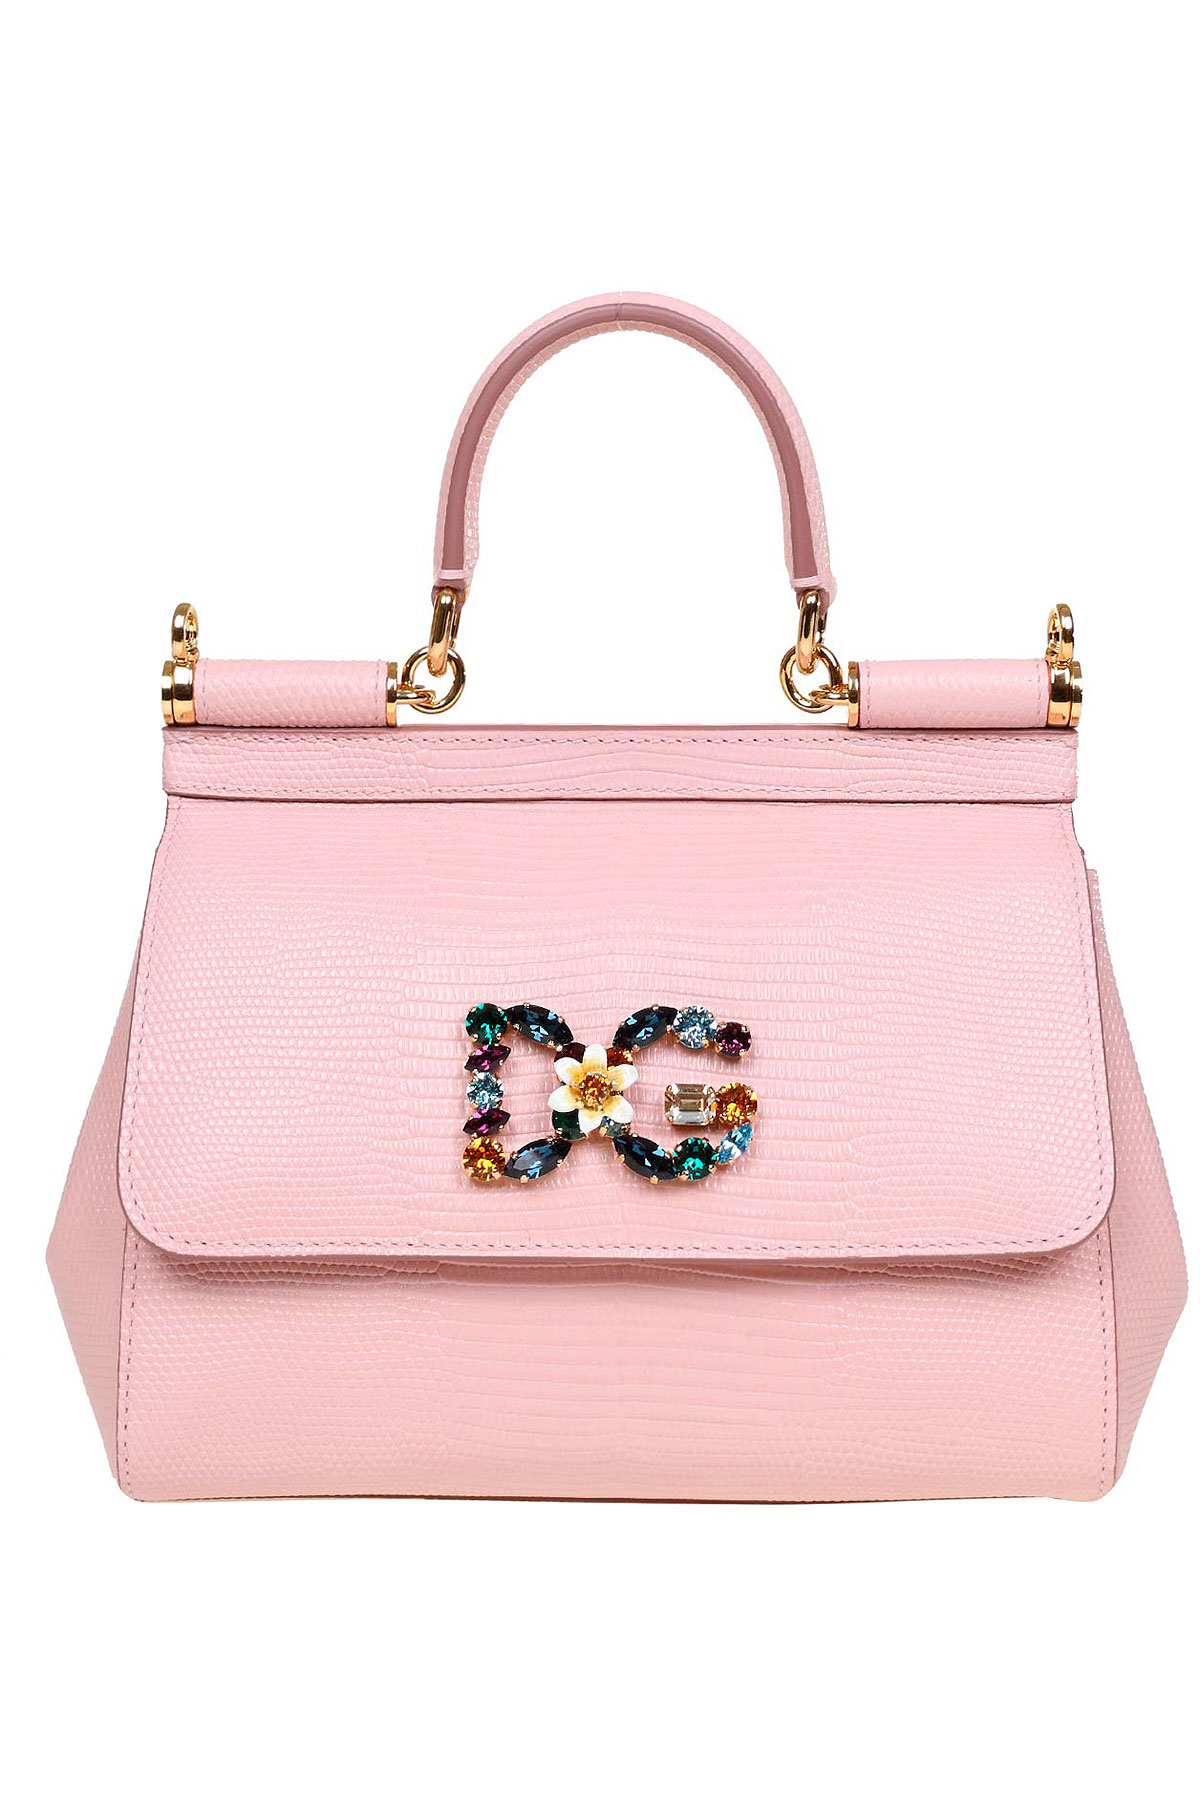 Handbags Dolce & Gabbana, Style code: bb6003-ai742-8h472